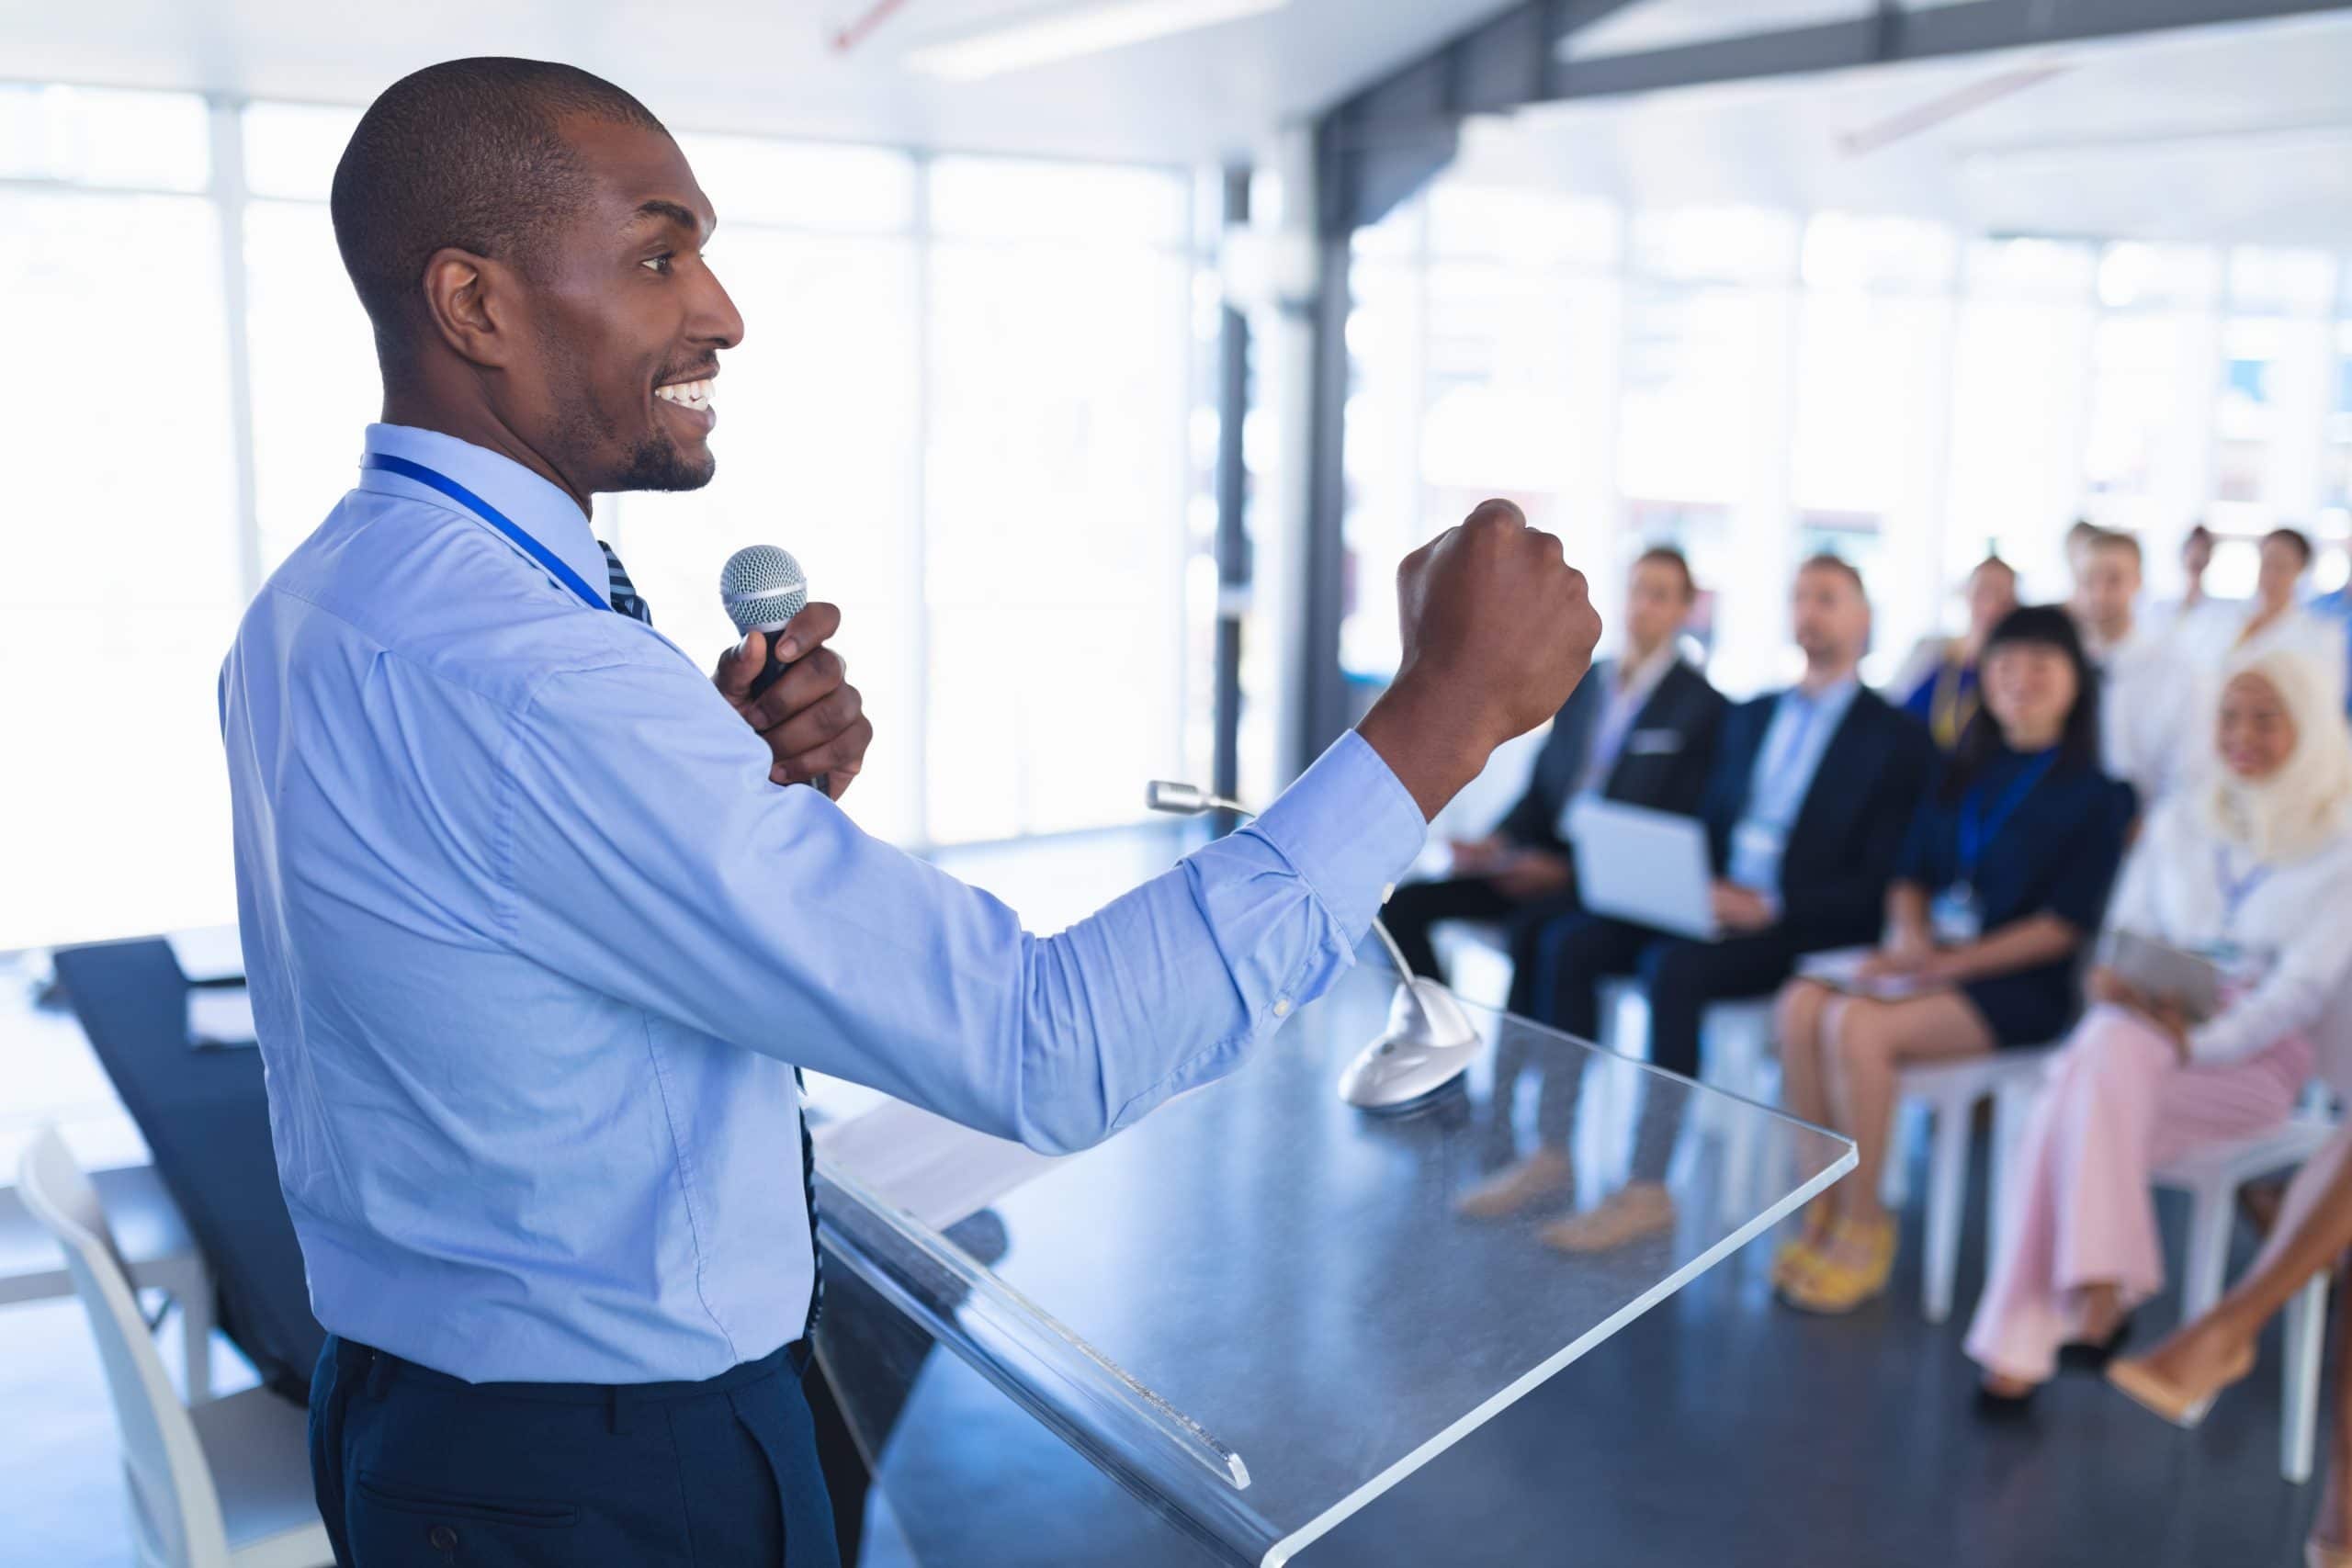 Male speaker speaks in business seminar